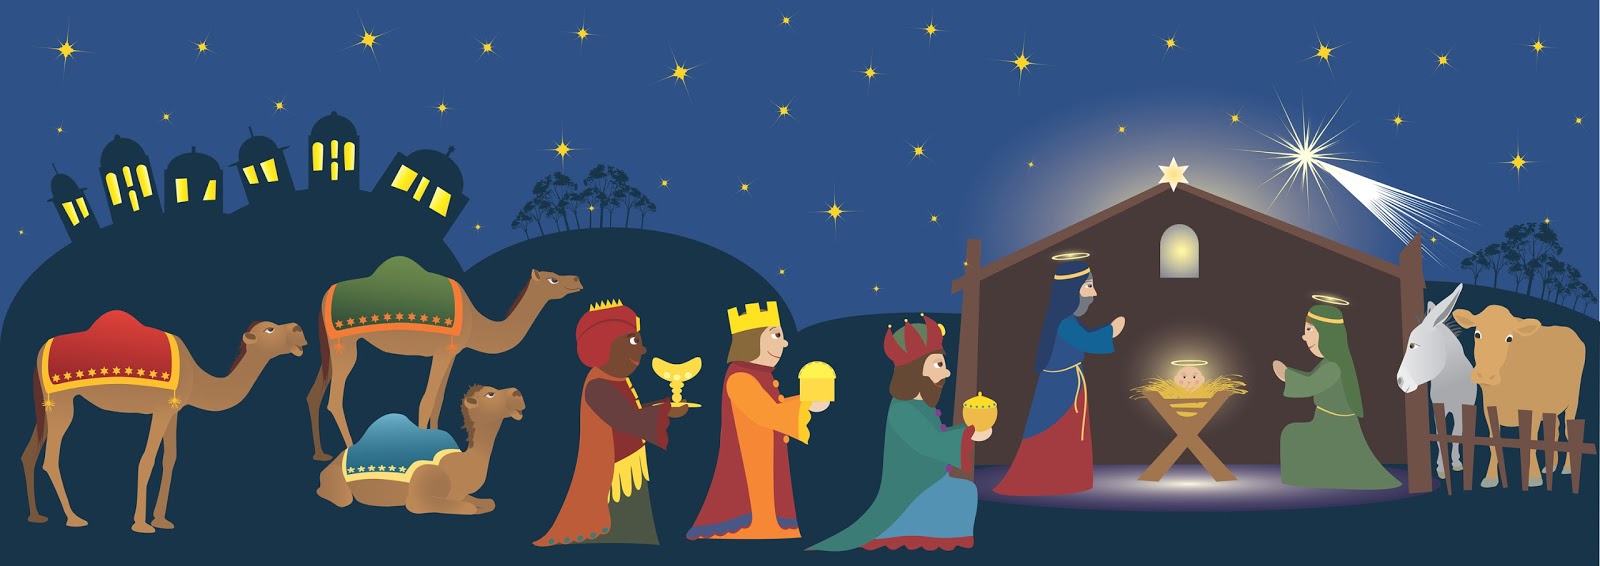 Blog di Spagnolo: Día de los Reyes Magos (1A)